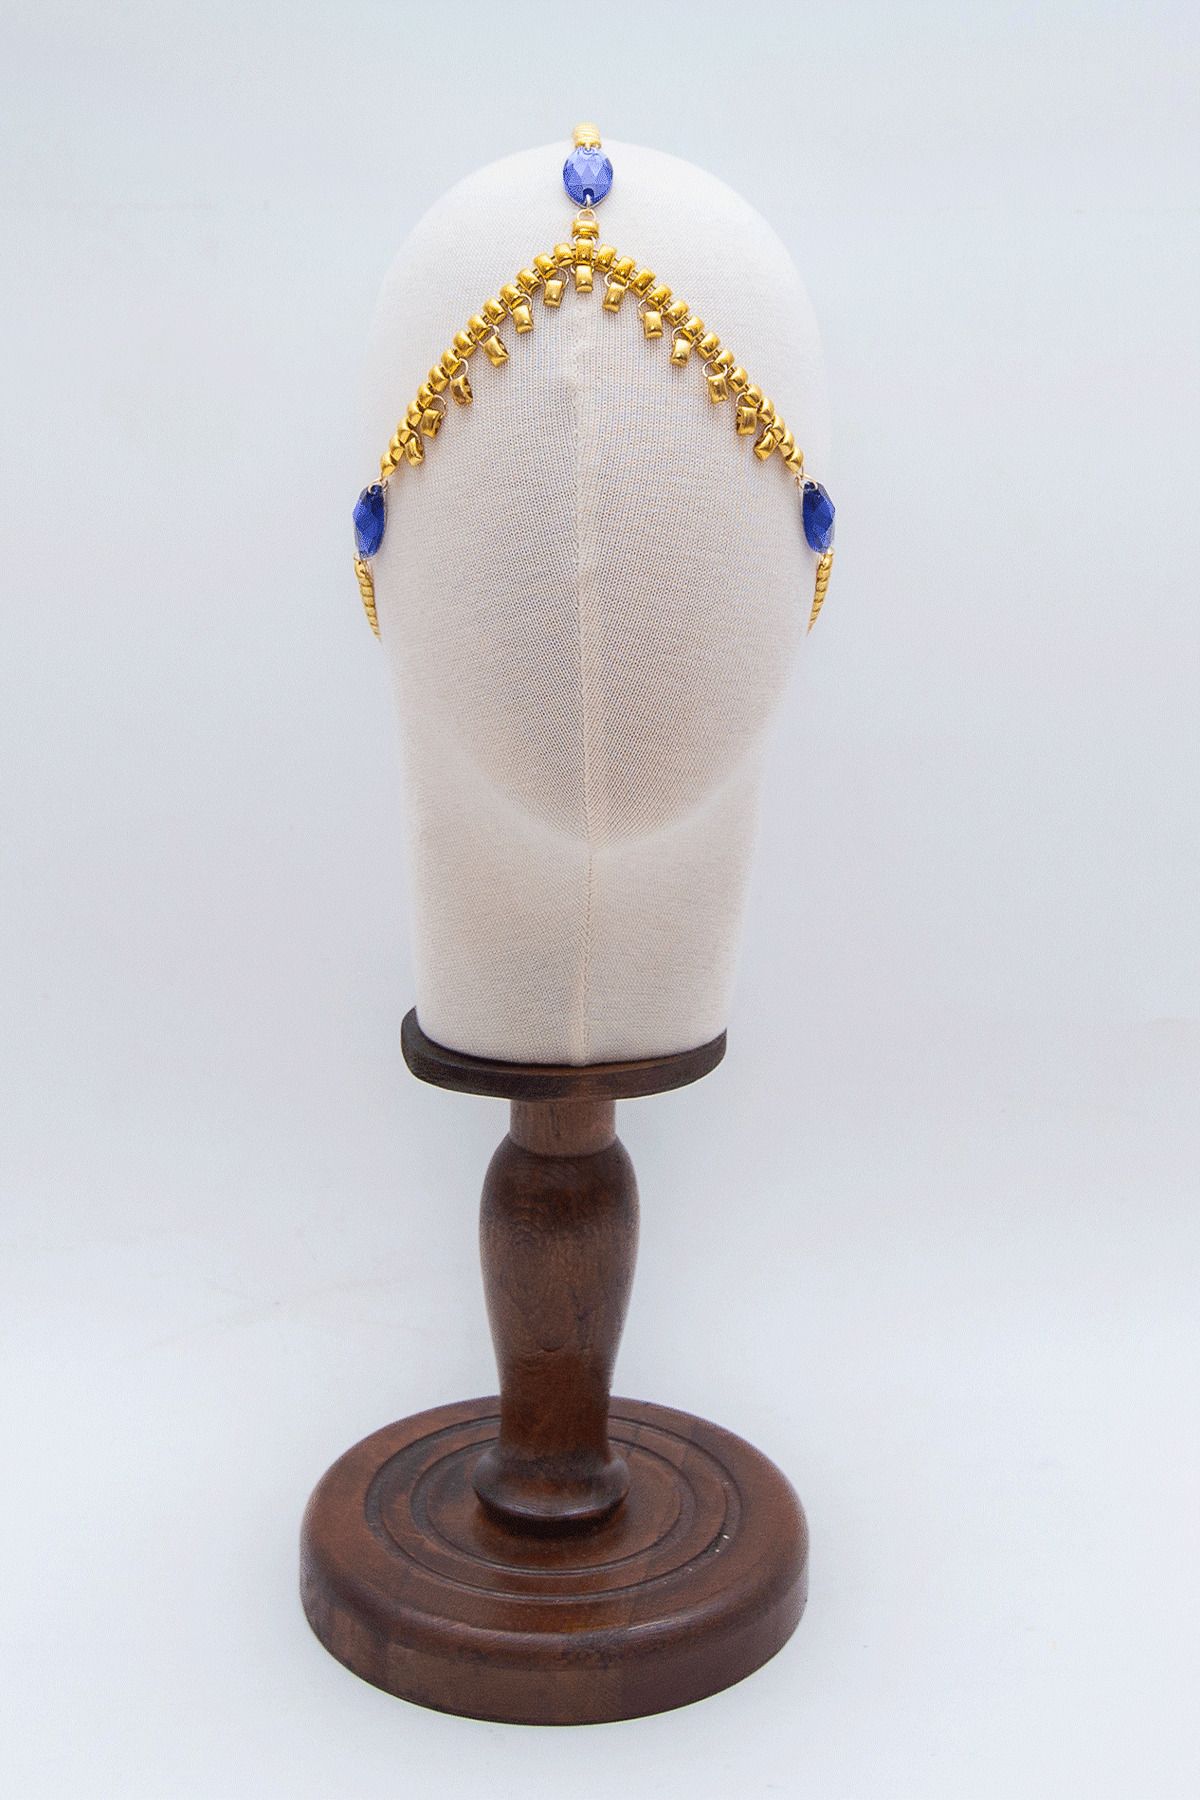 Sun Pieces Nyx Headpiece Mavi Taşlı Altın Rengi Saç Aksesuarı, Festival Aksesuarı, Kına Aksesuarı